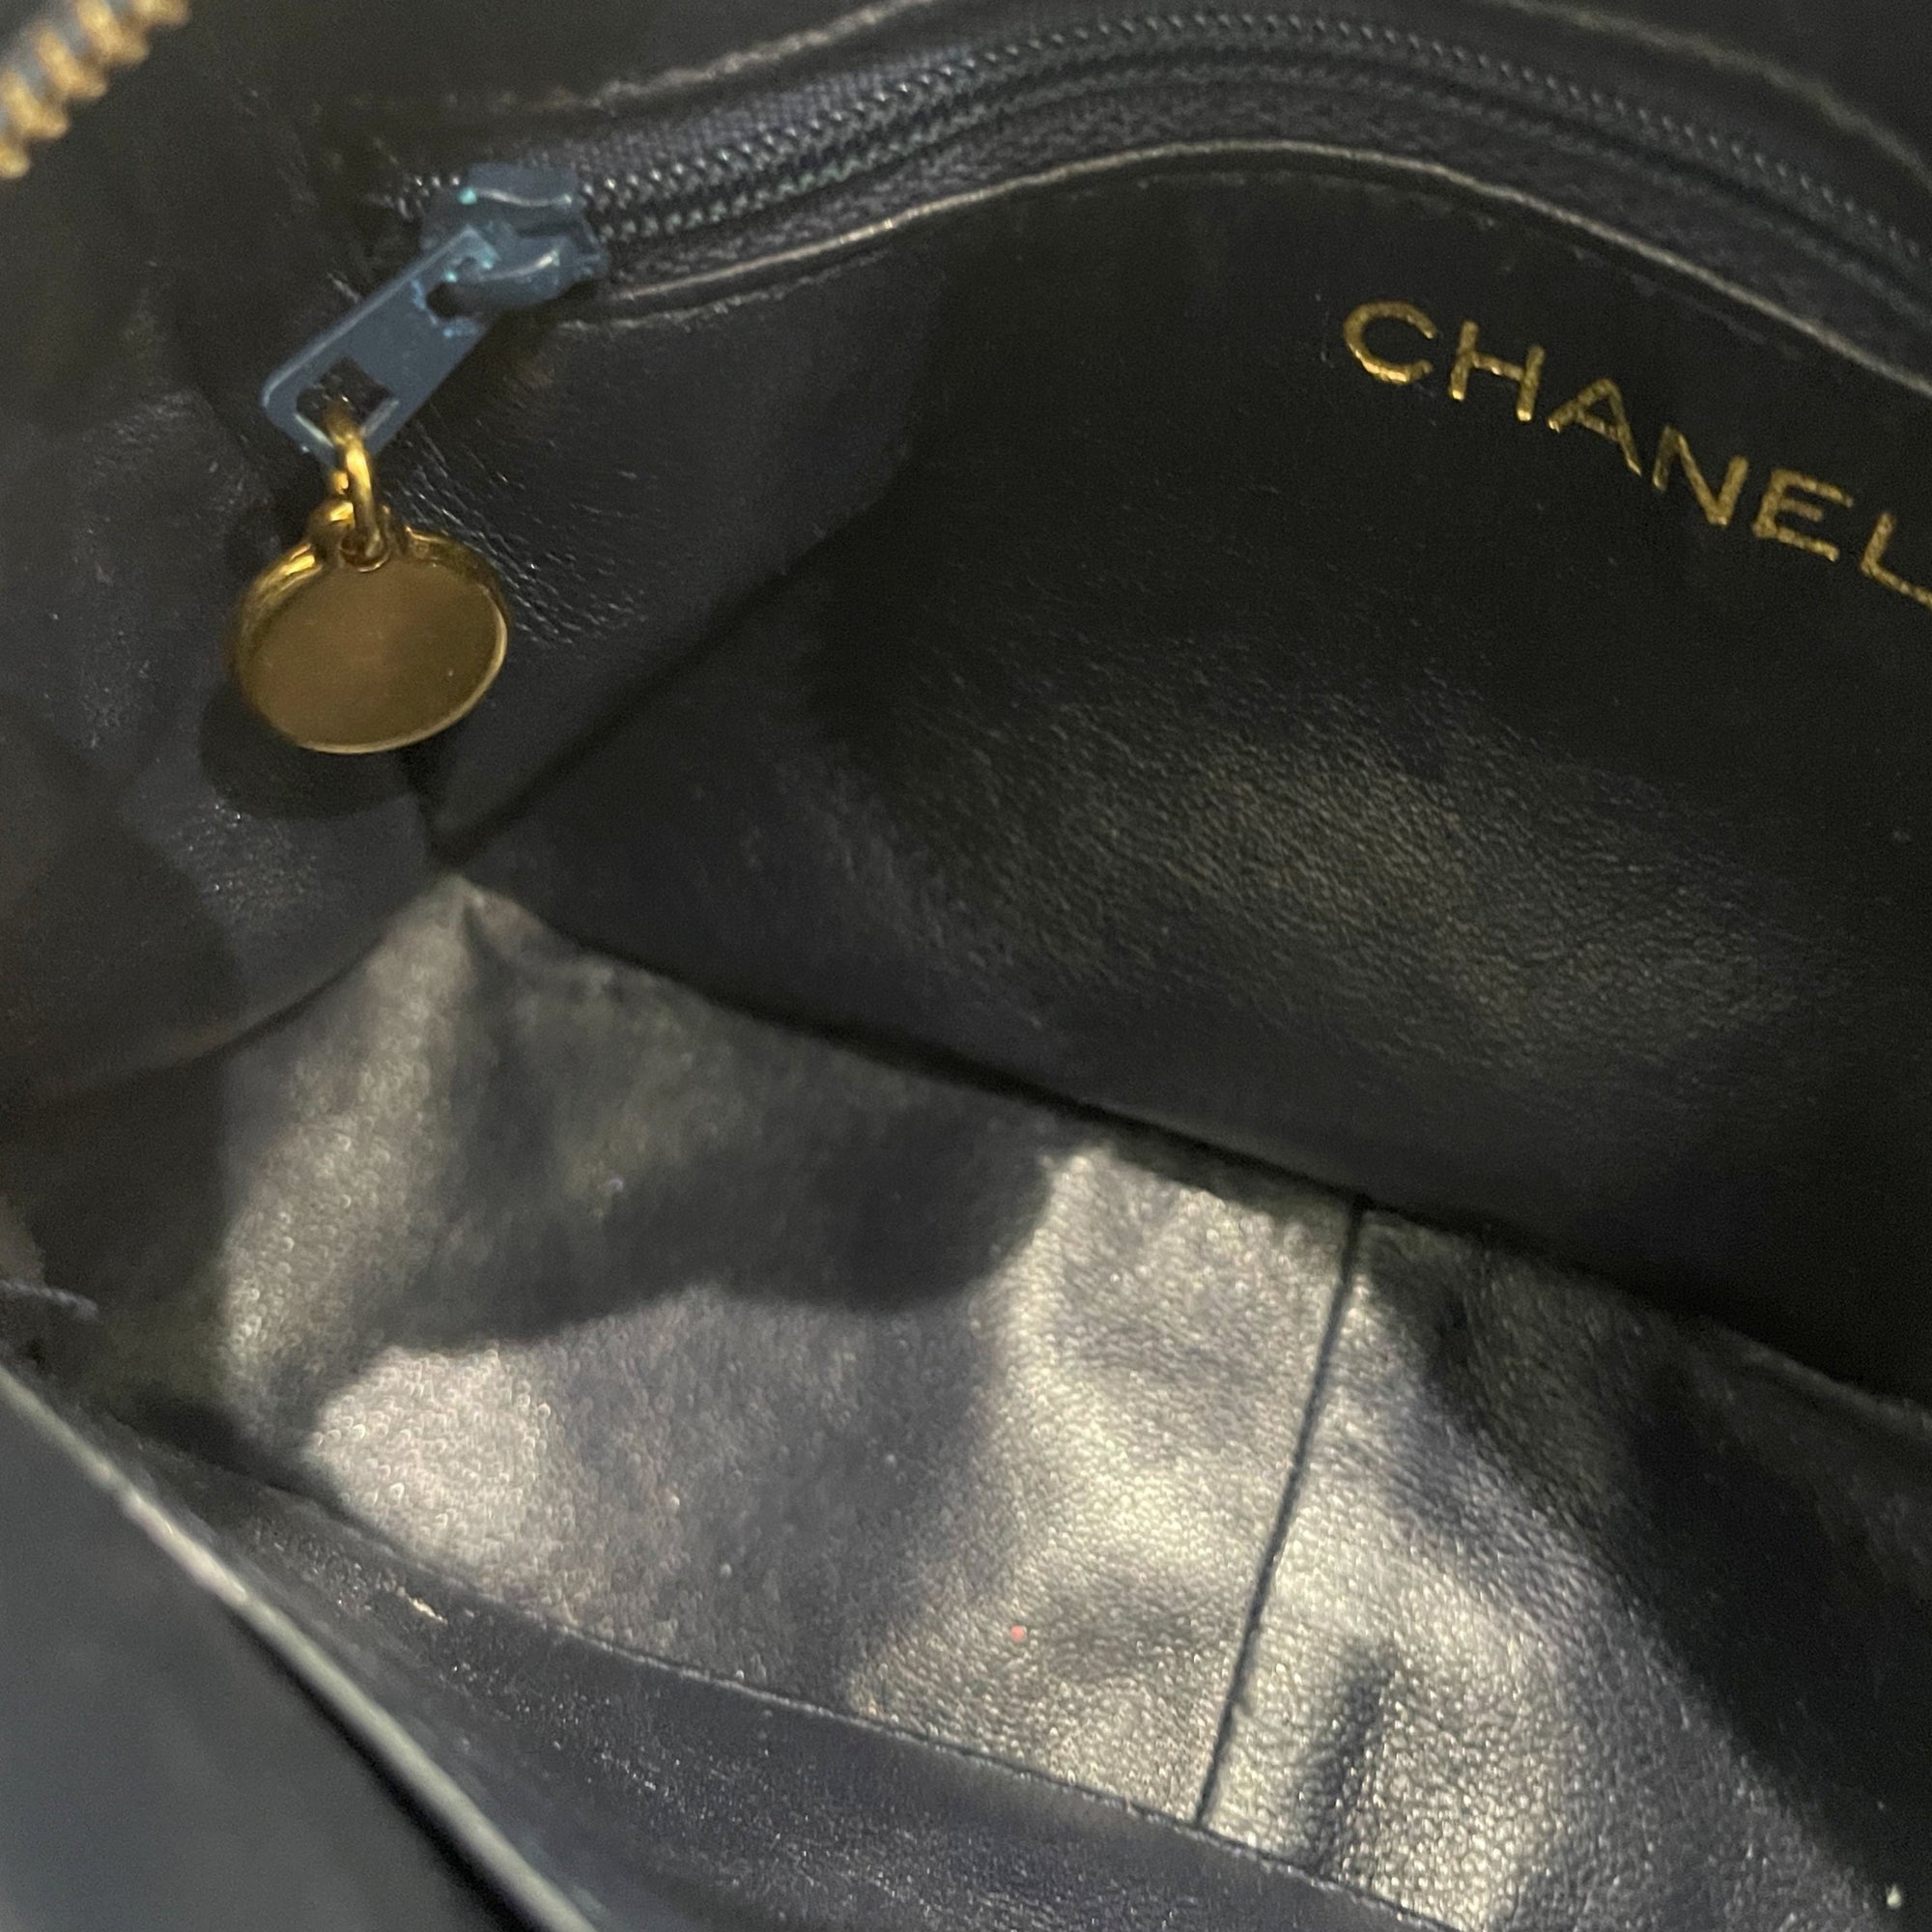 Chanel Dark Navy Quilted Camera Bag - Handbags